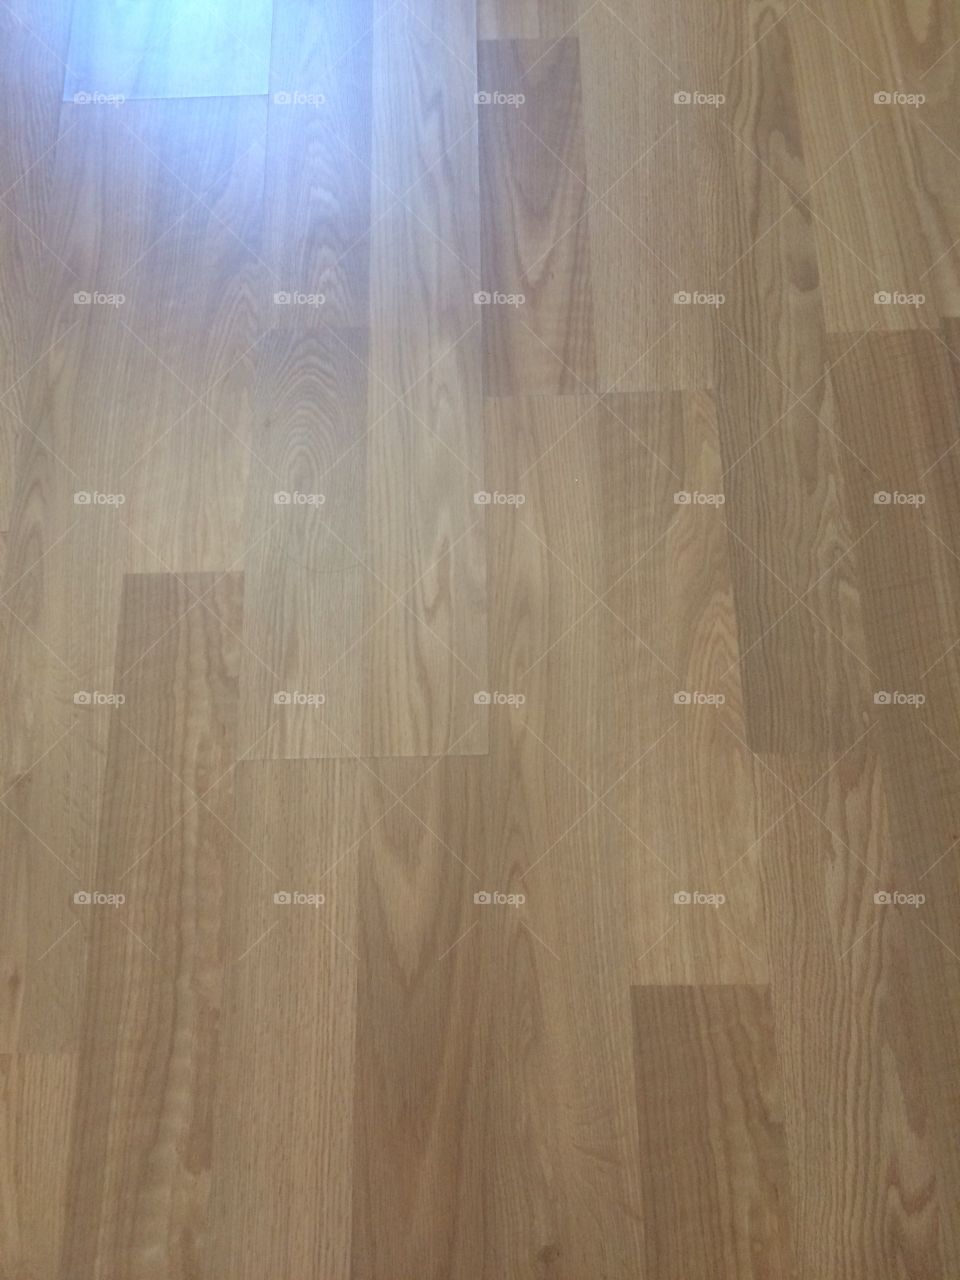 Symmetric floor. 